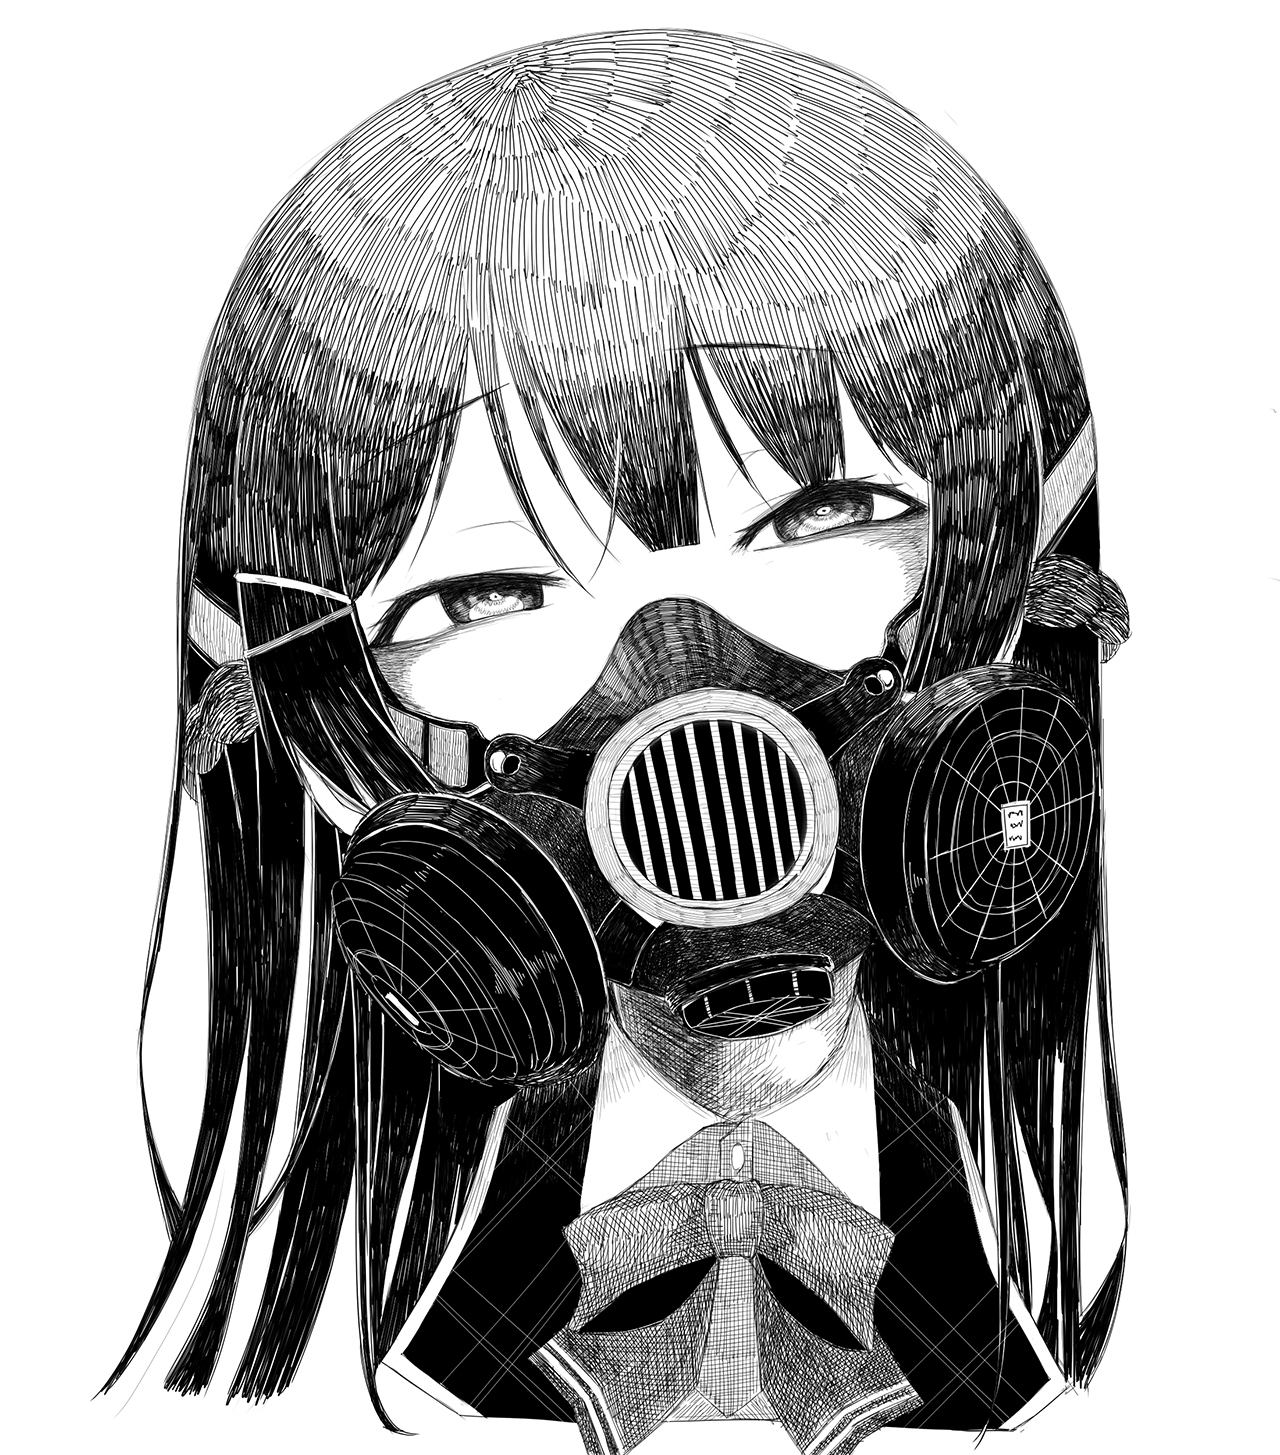 ガスマスク女子 イラスト集16枚 顔を覆う無機質な装置からただよう異形のオーラの画像 Gas 30